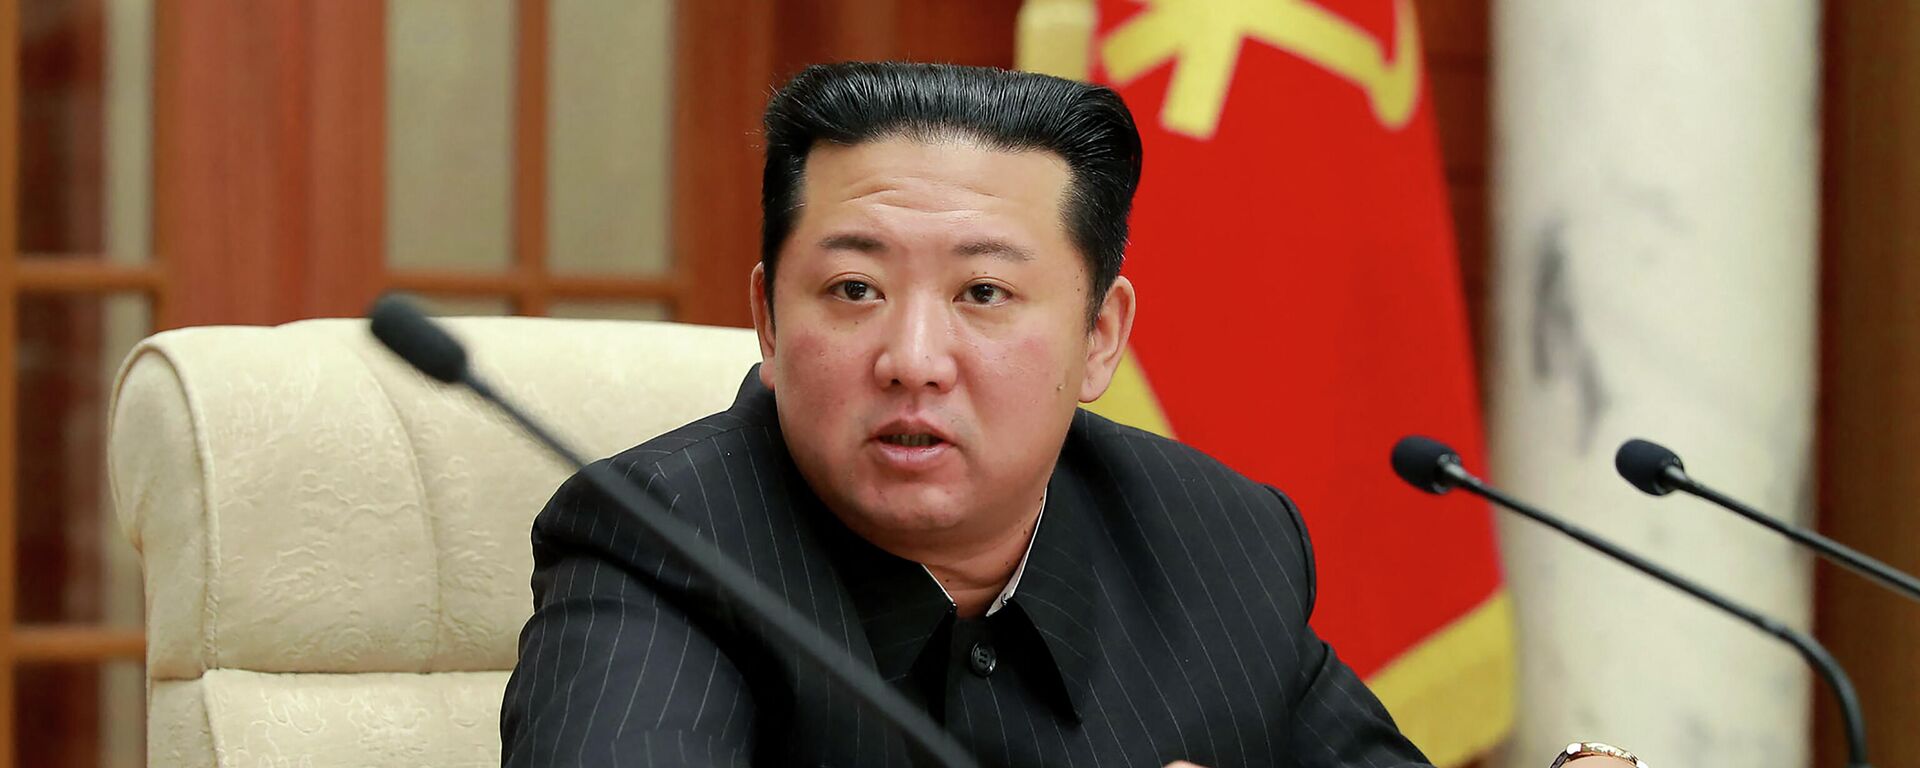 Foto tirada em 19 de janeiro de 2022 e divulgada pela Agência Central de Notícias da Coreia (KCNA), em 20 de janeiro, mostra o líder norte-coreano Kim Jong-un durante reunião do partido, em Pyongyang - Sputnik Brasil, 1920, 20.01.2022